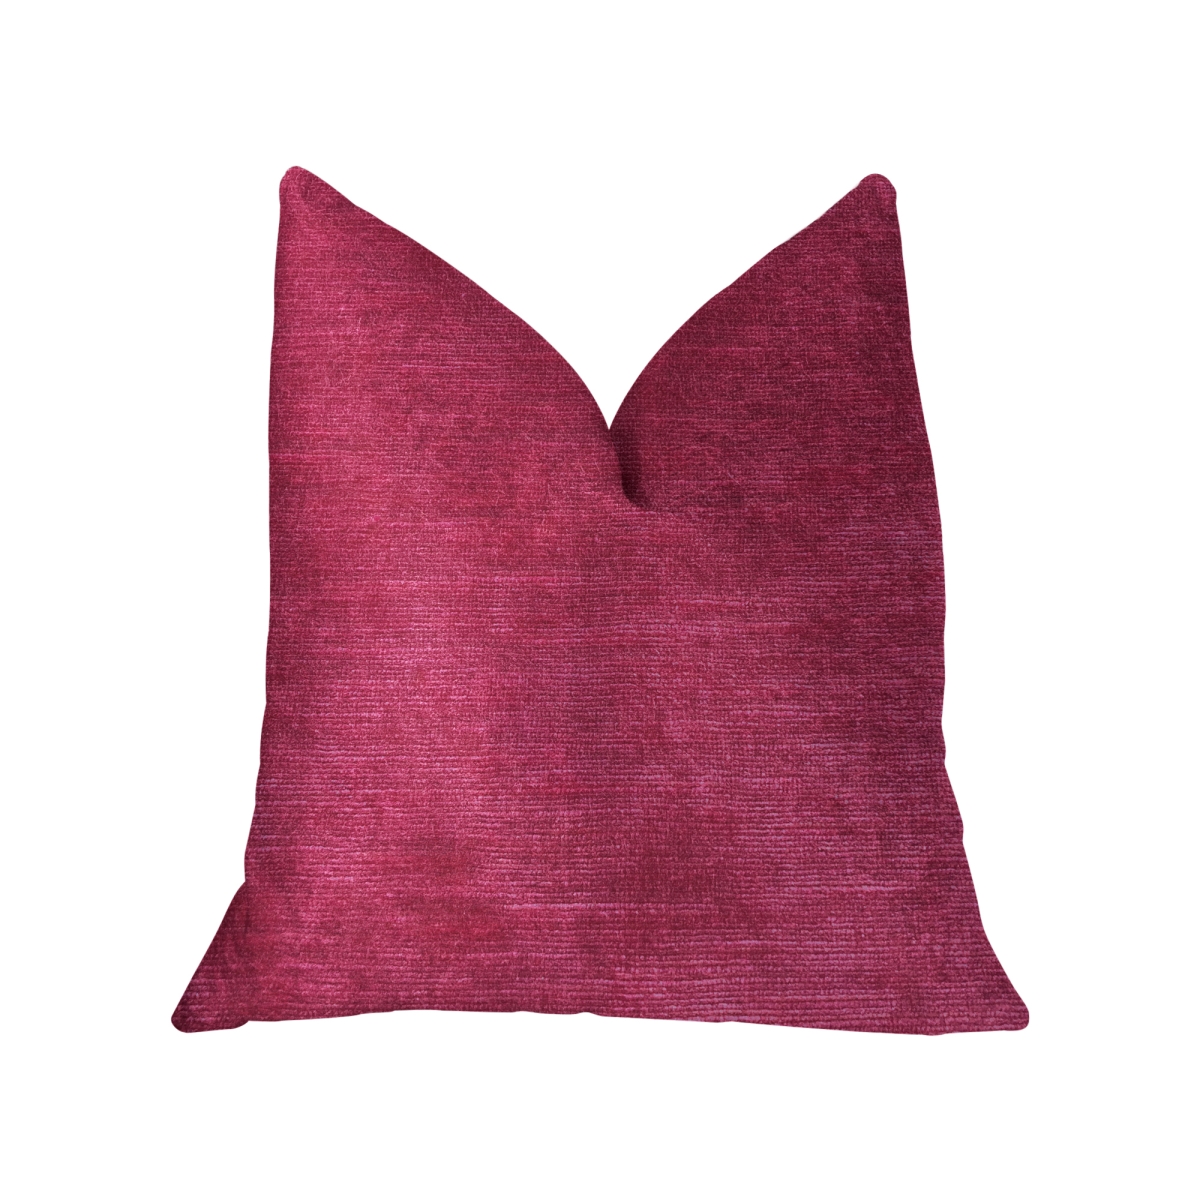 Plutus PBKR1905-2424-DP Lady Fuschia Pink Luxury Throw Pillow, 24 x 24 in.